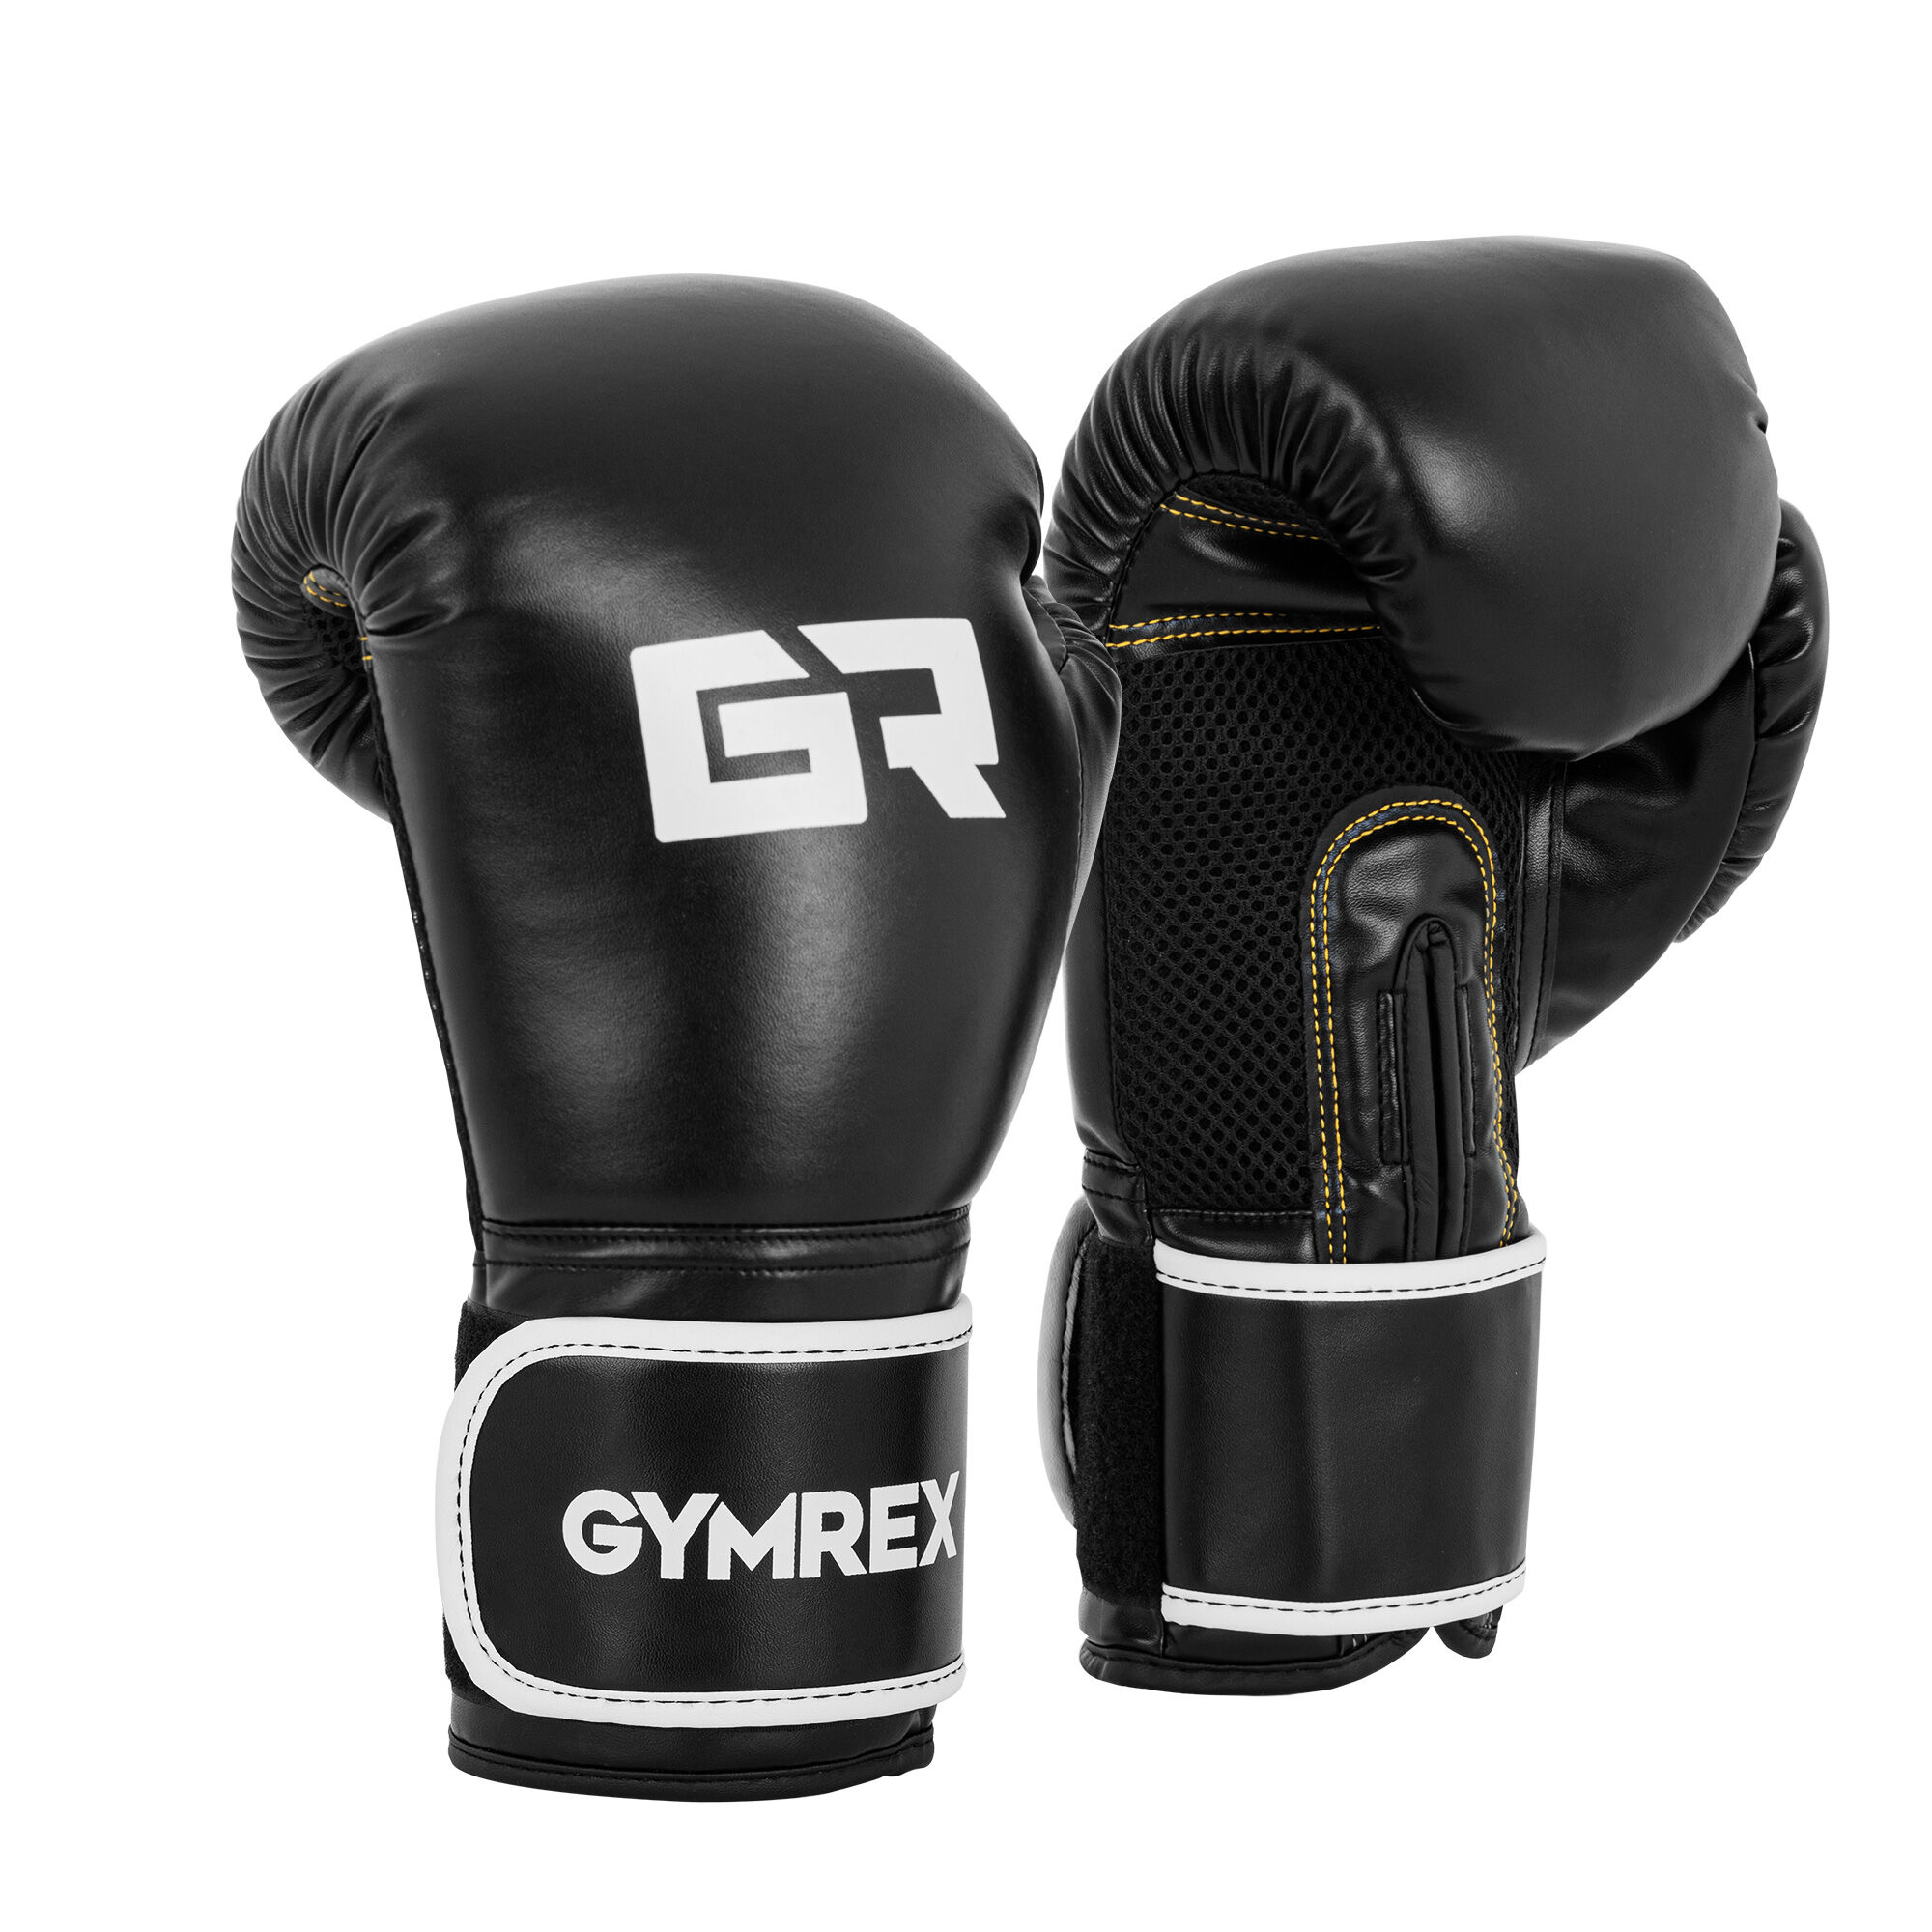 Gymrex Guantoni boxe - 14 oz - rete interna - neri GR-BG 14B